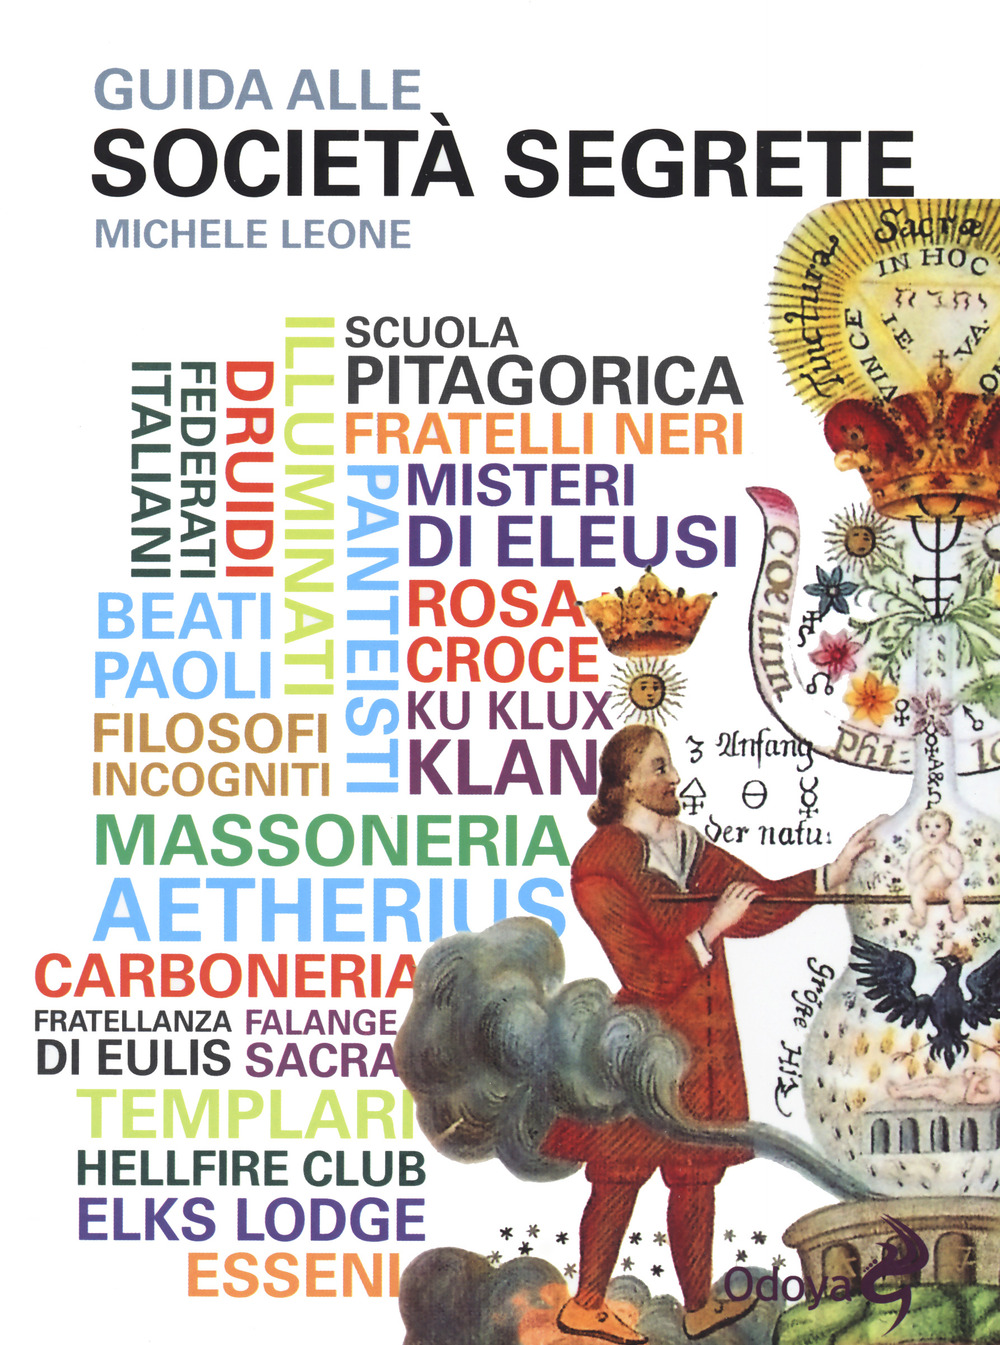 Image of Guida alle società segrete